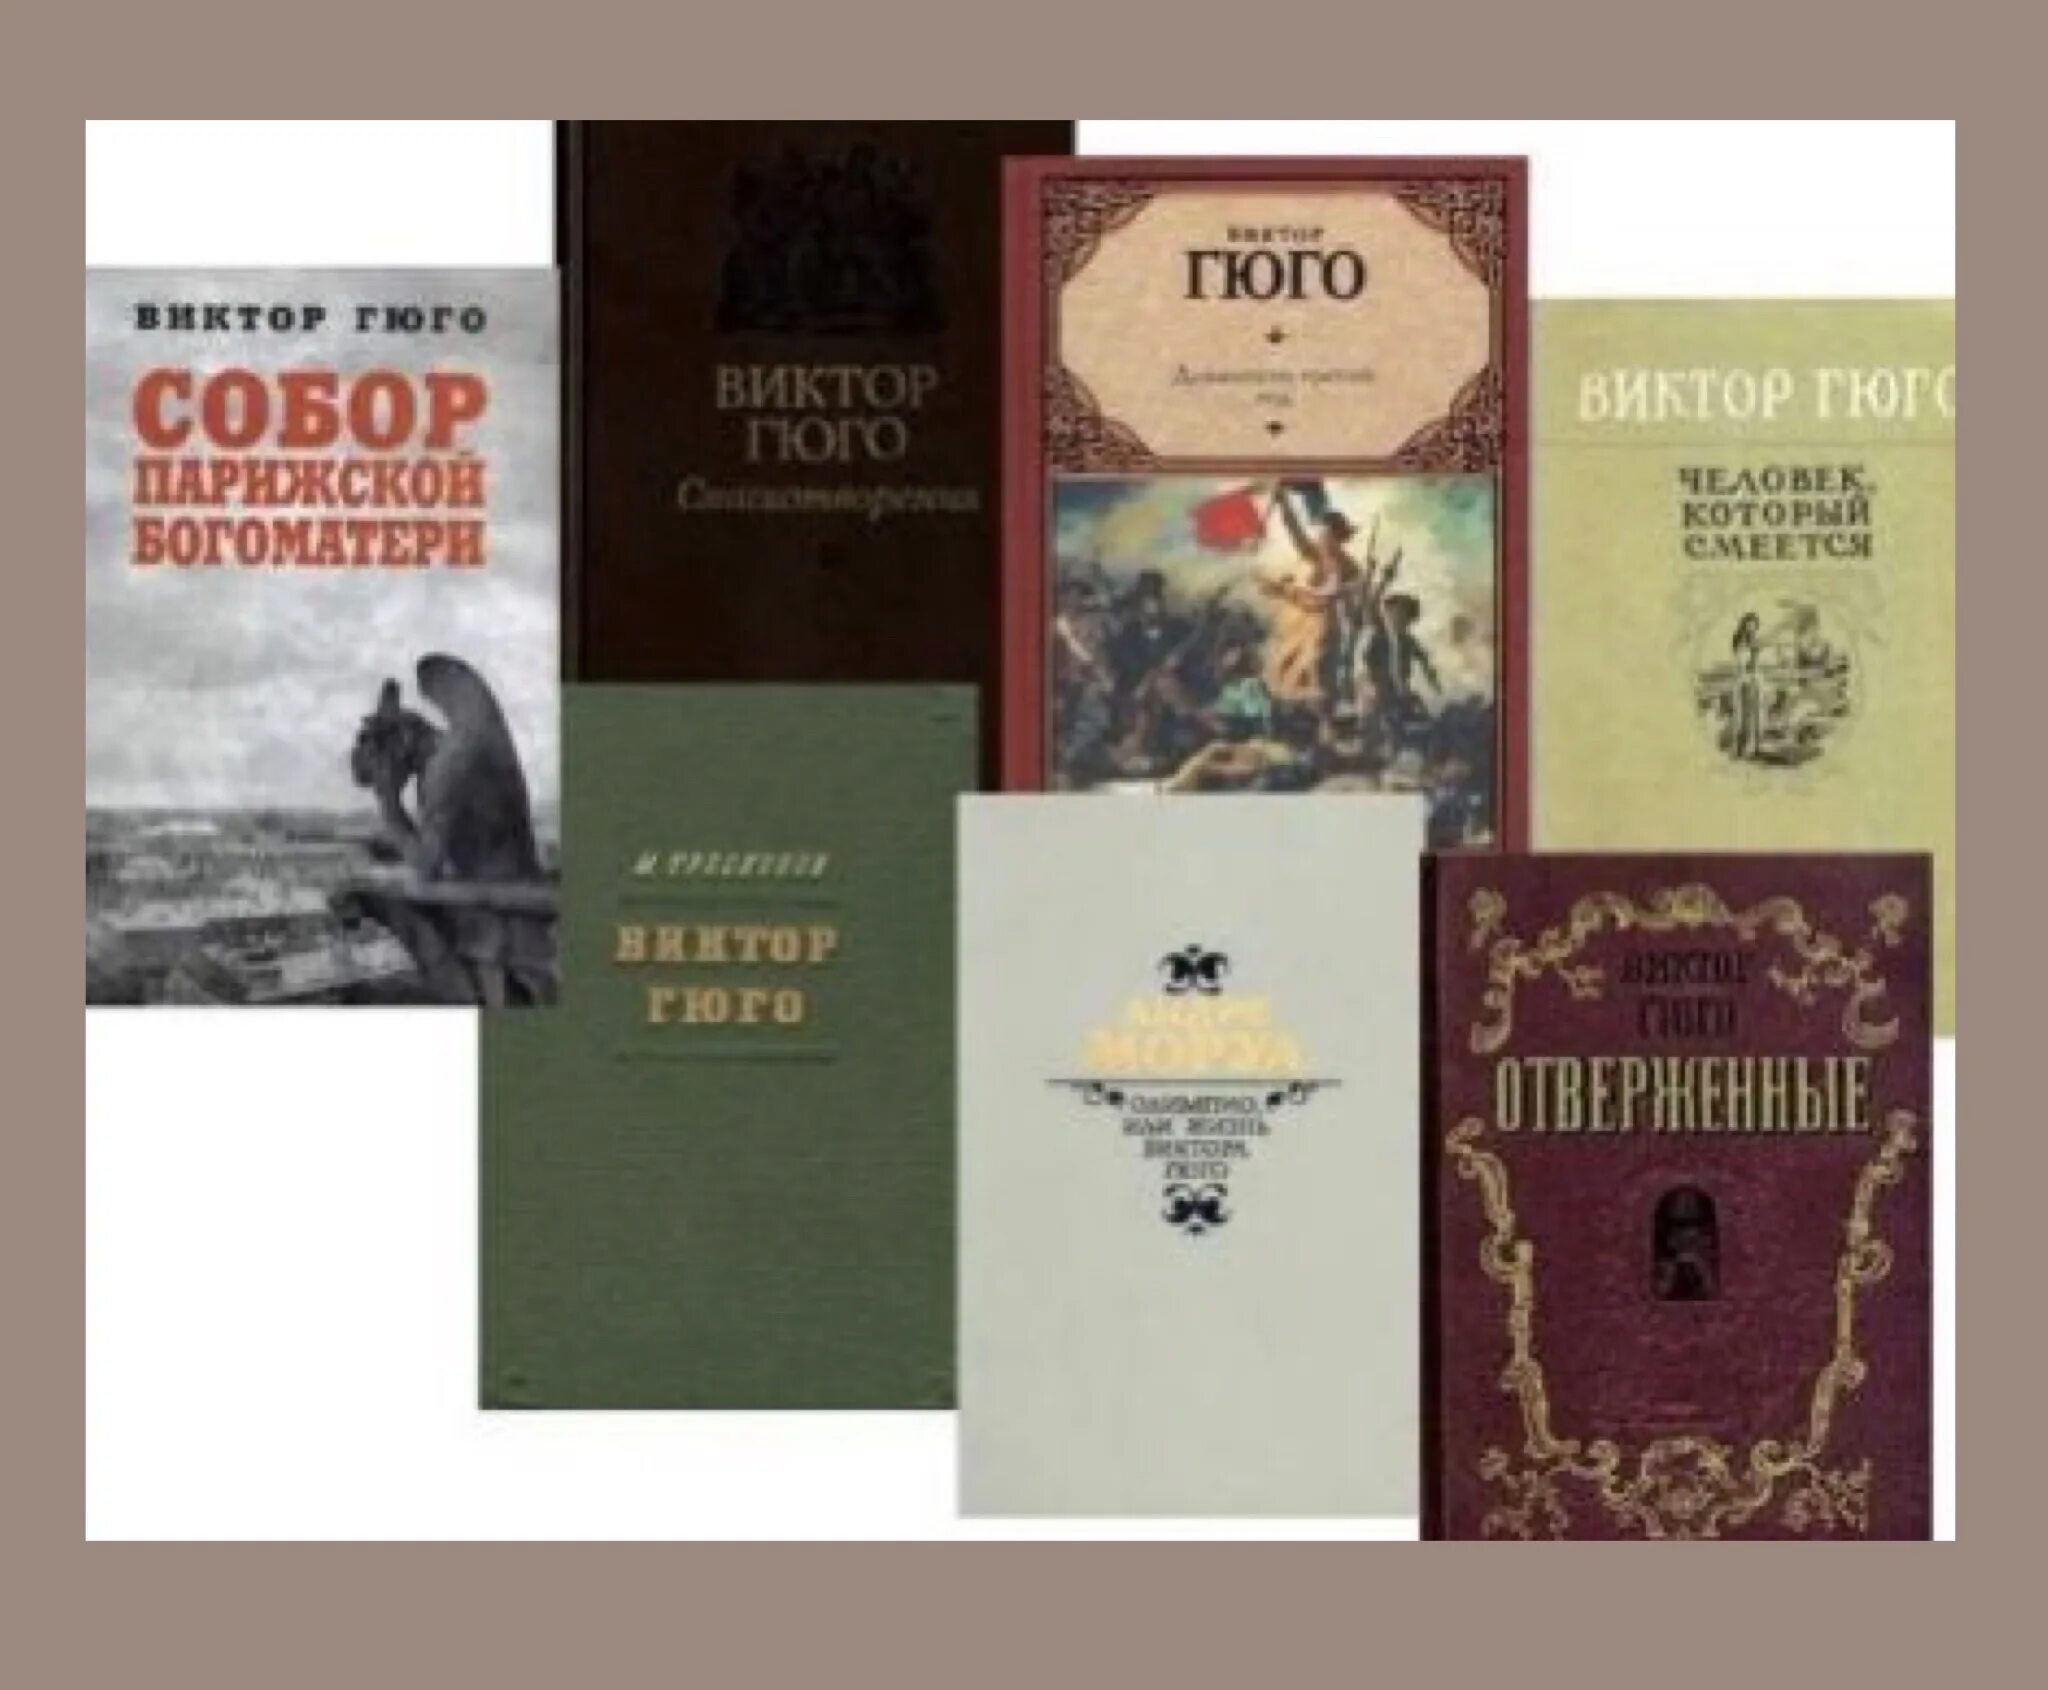 Самые известные произведения листа. Книжная выставка о Викторе Гюго. Произведения Гюго самые известные.